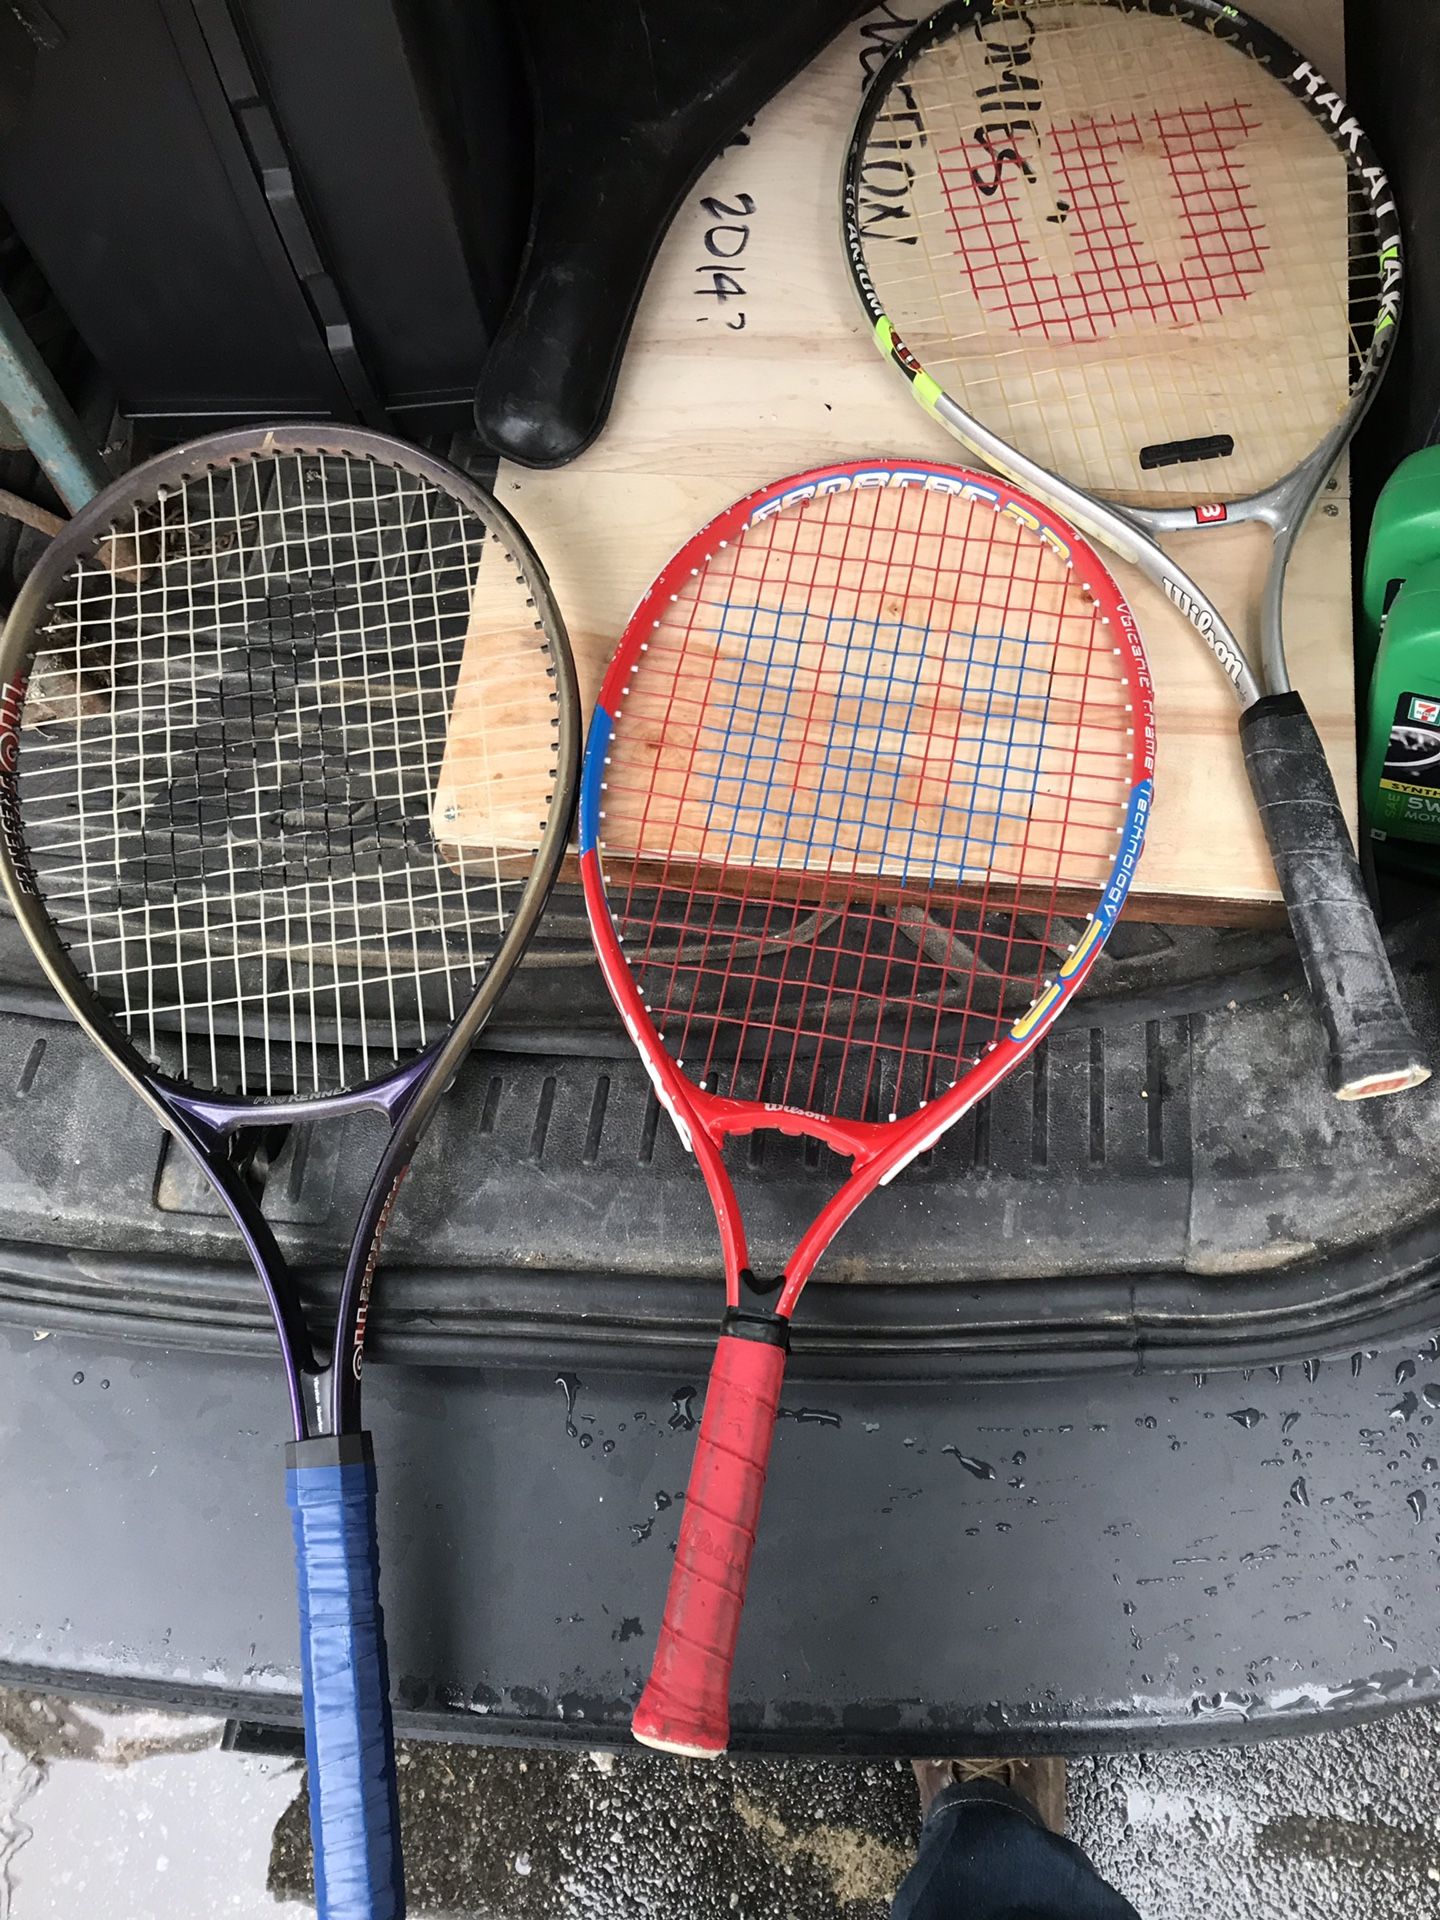 Children’s tennis rackets